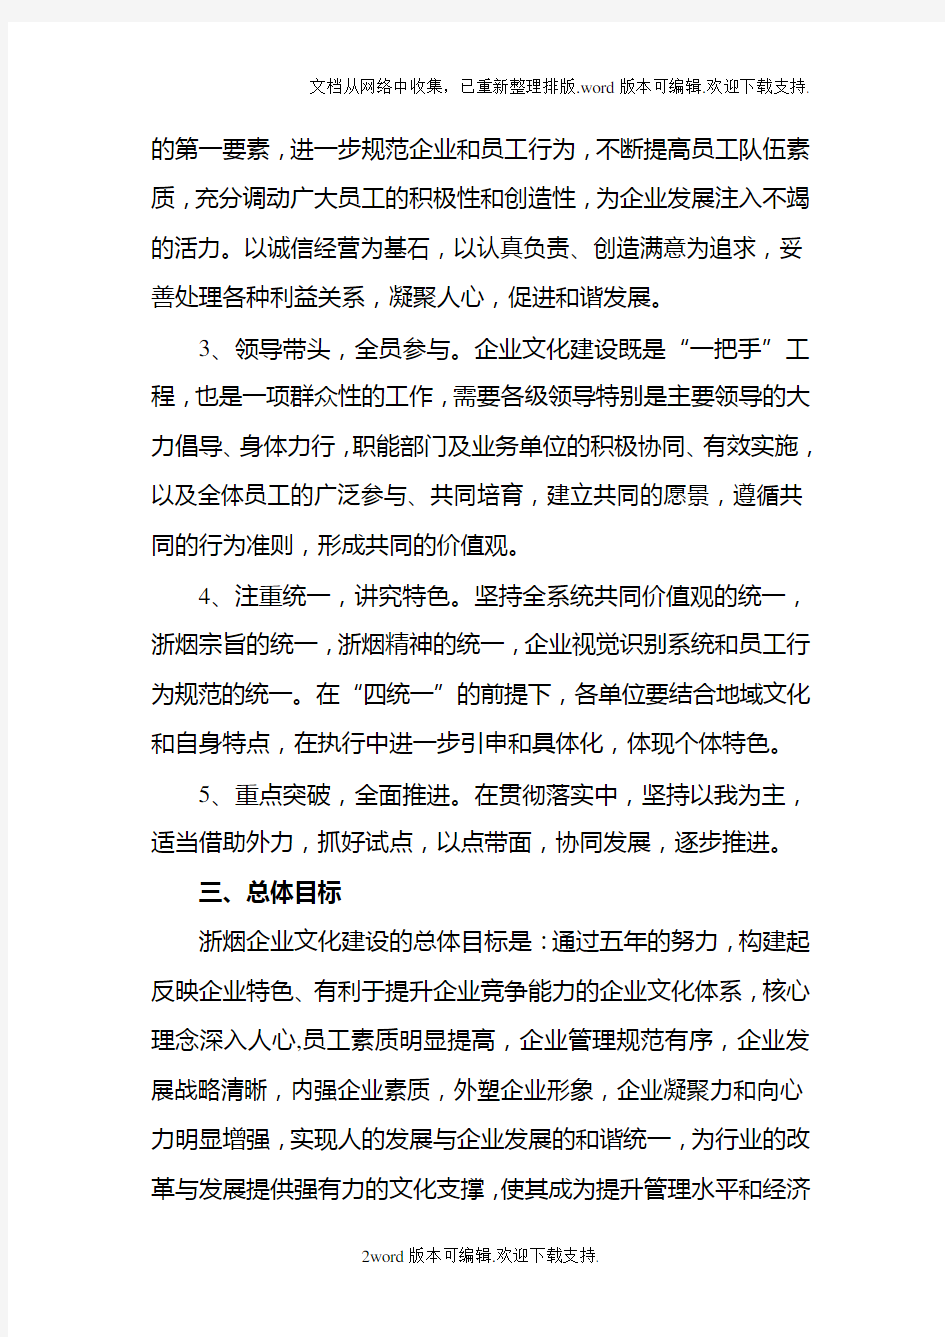 浙江省烟草专卖、商业系统企业文化建设五年规划